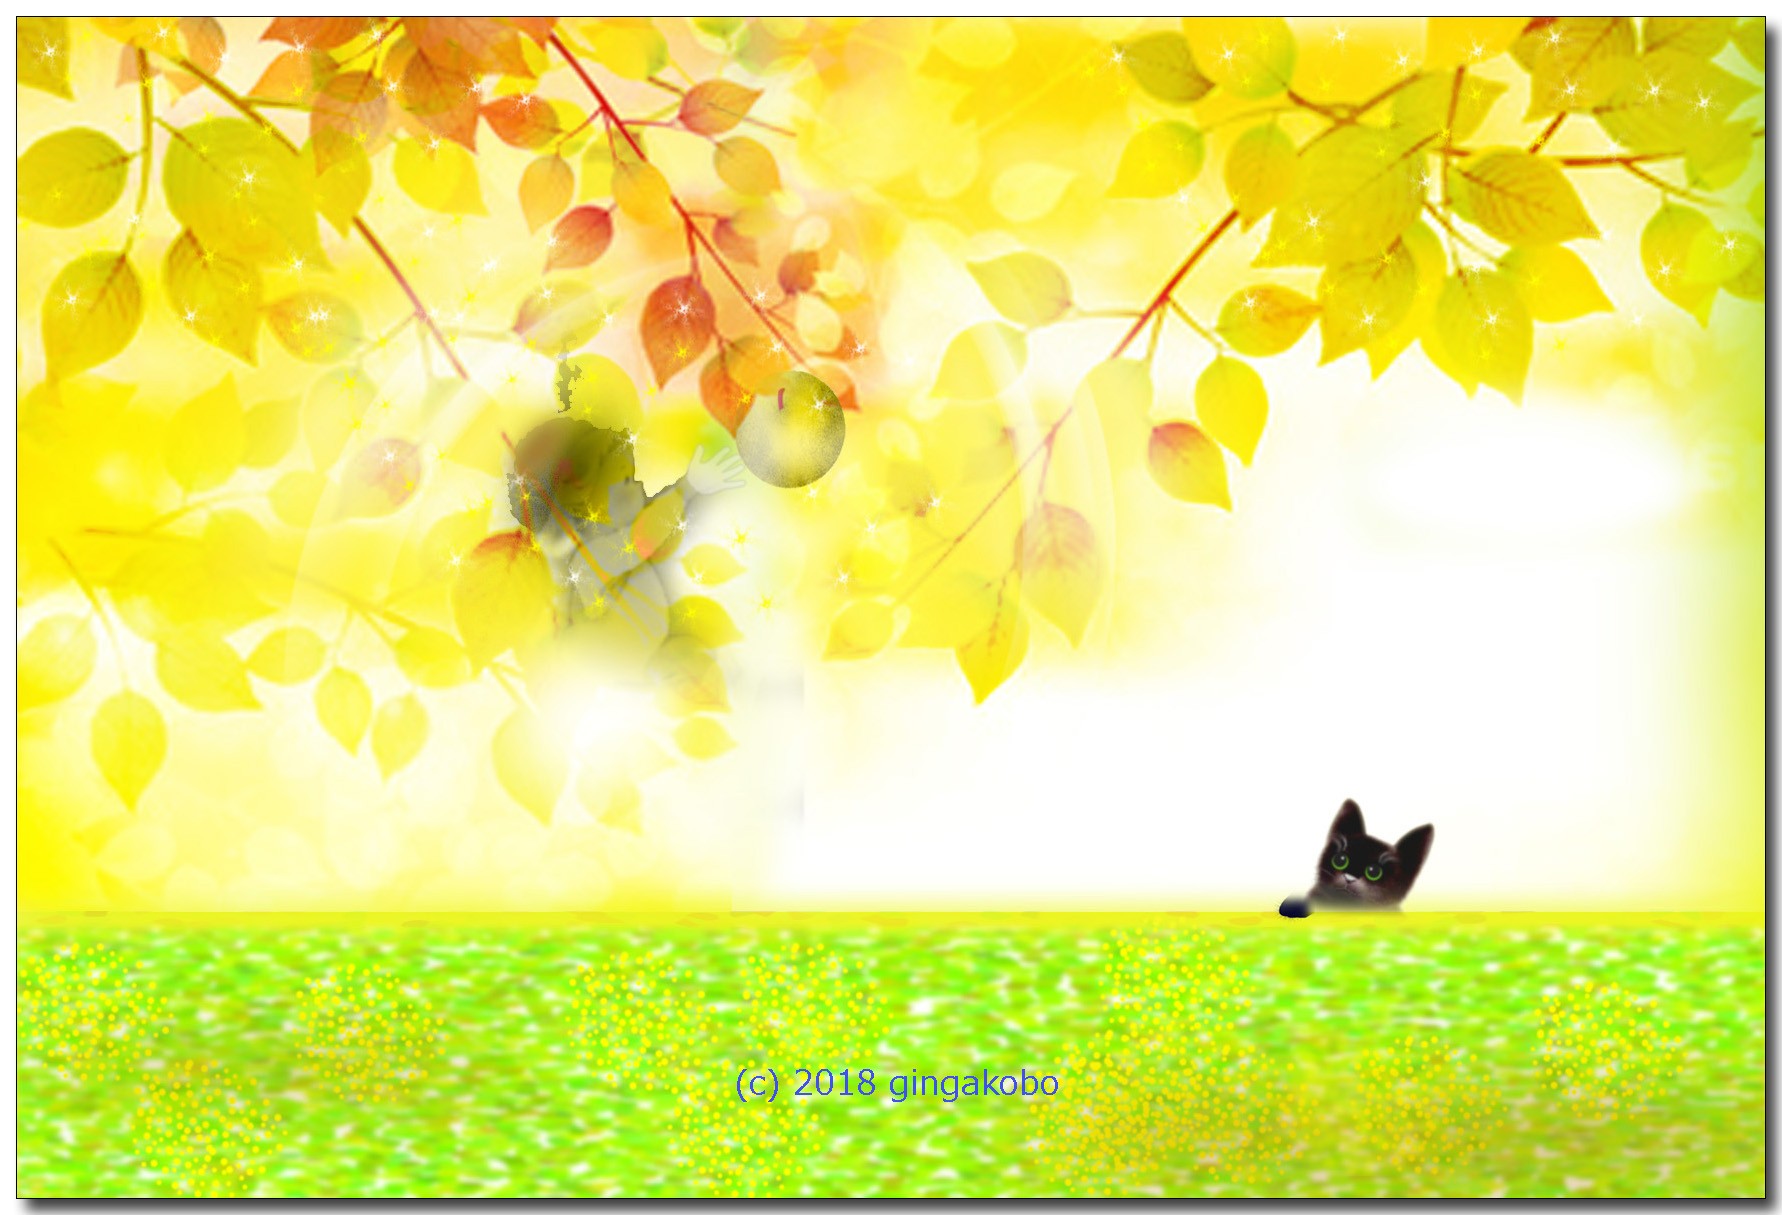 天使と黒猫 ほっこり癒しのイラストポストカード2枚組no 616 Iichi